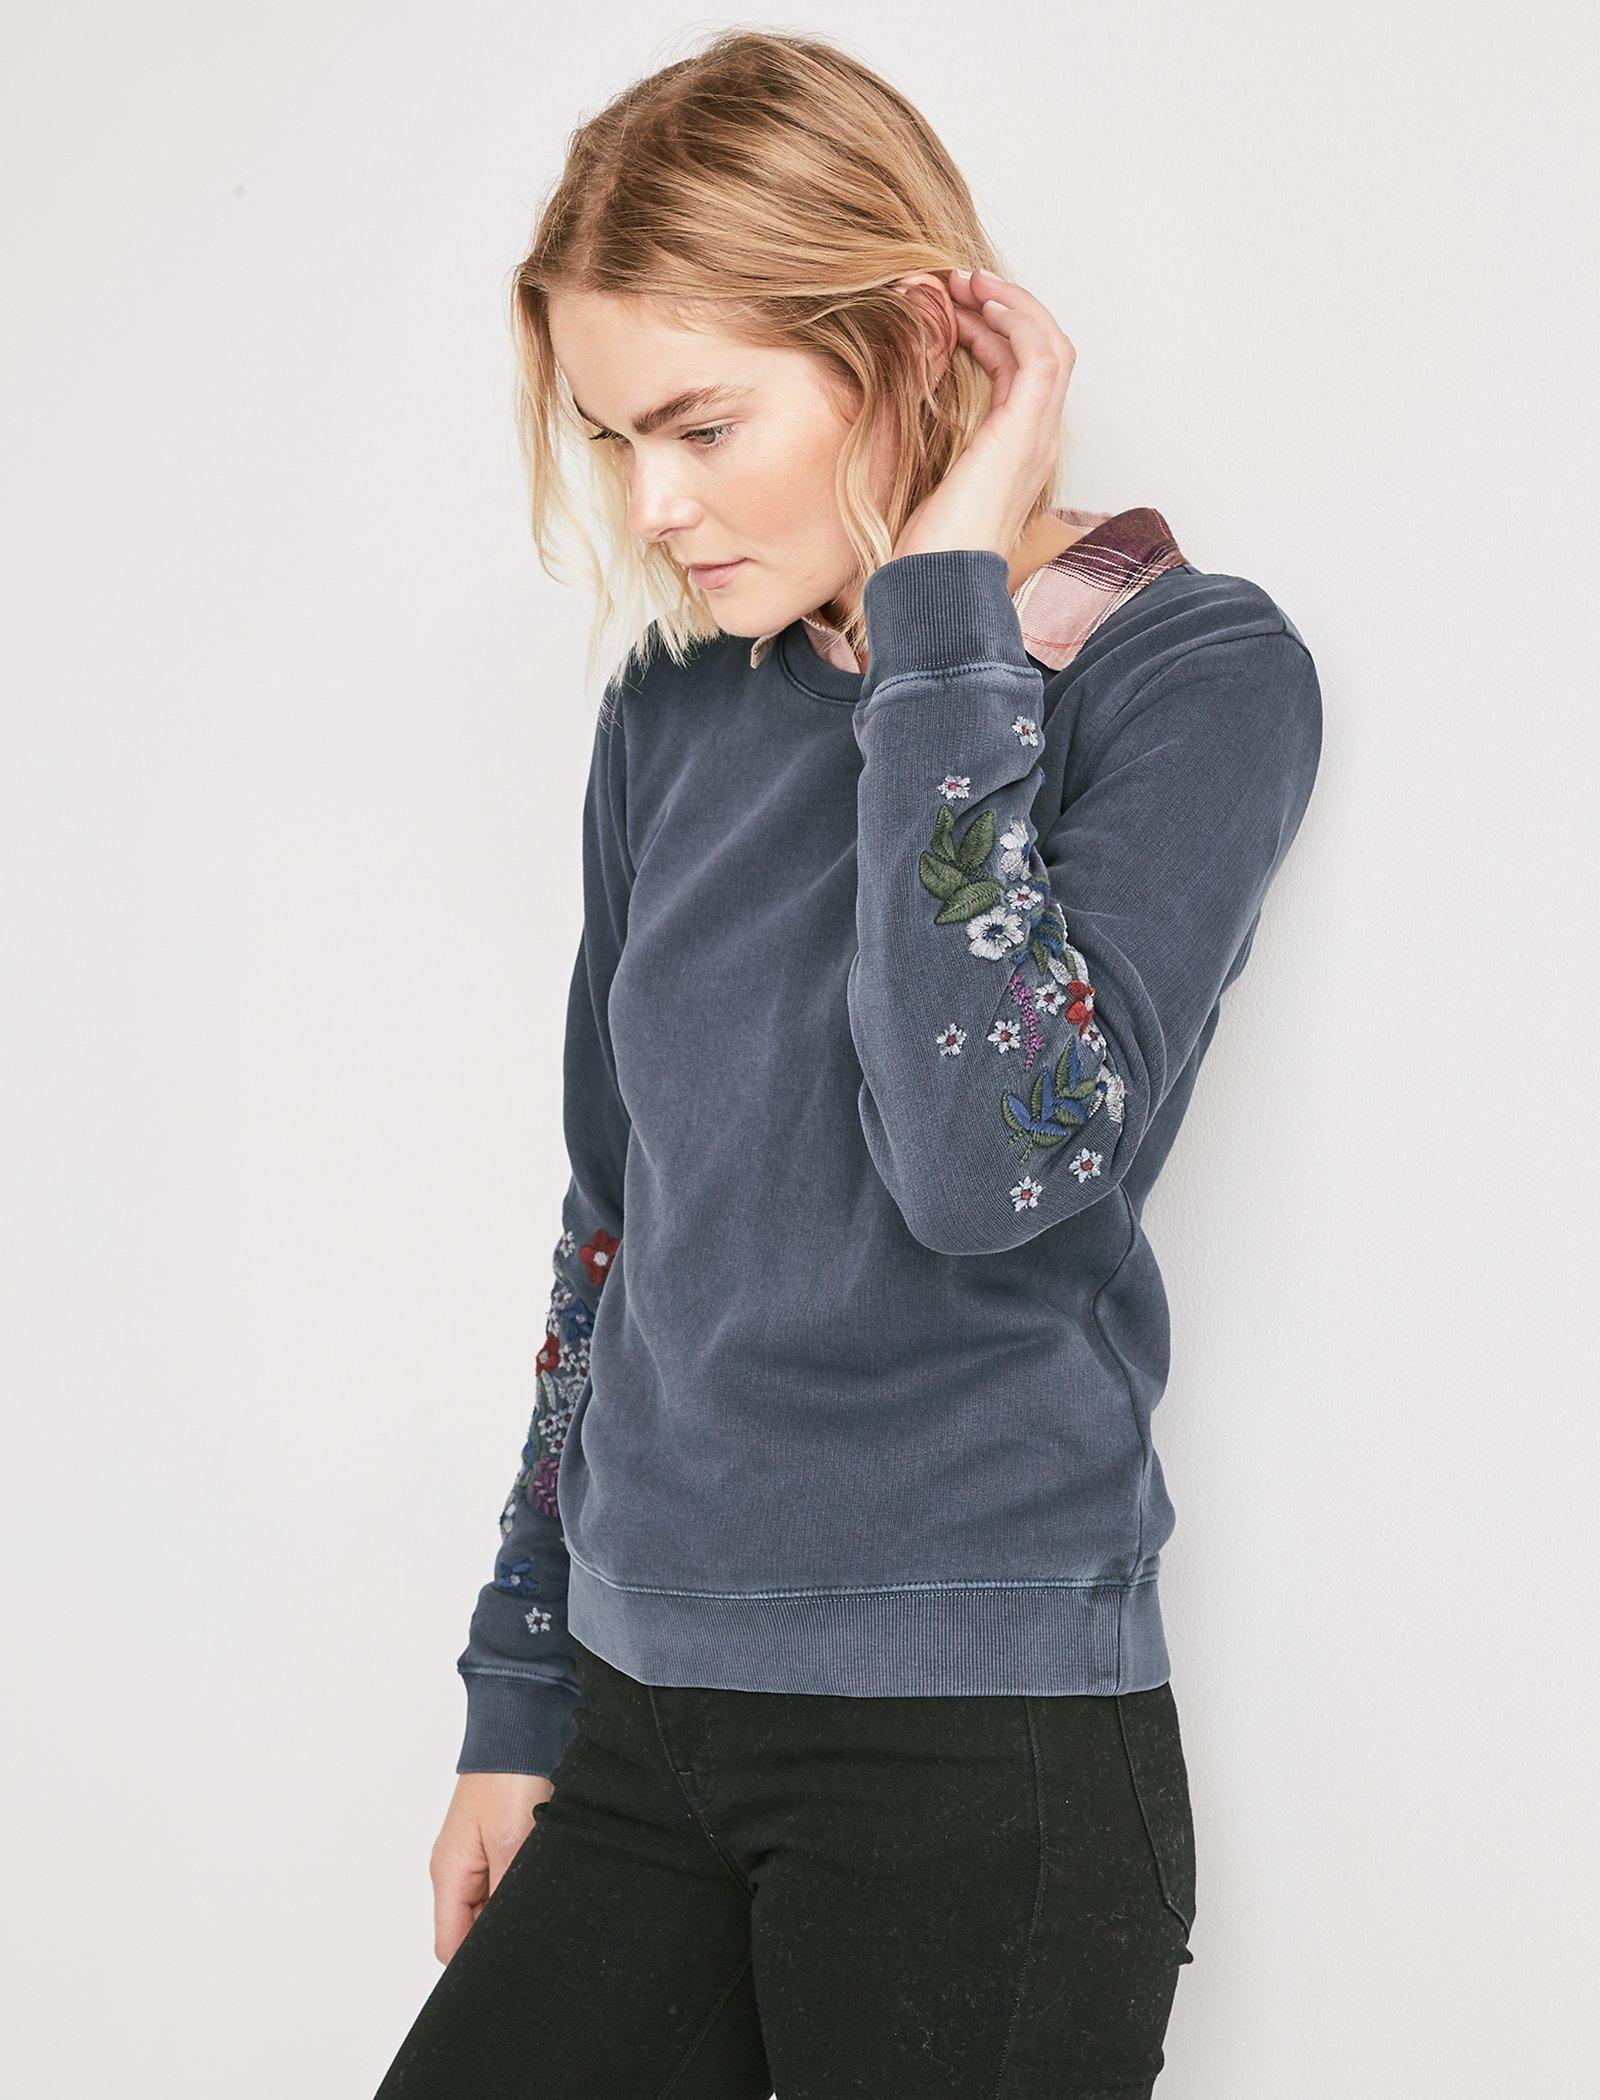 embroidered flower sweatshirt